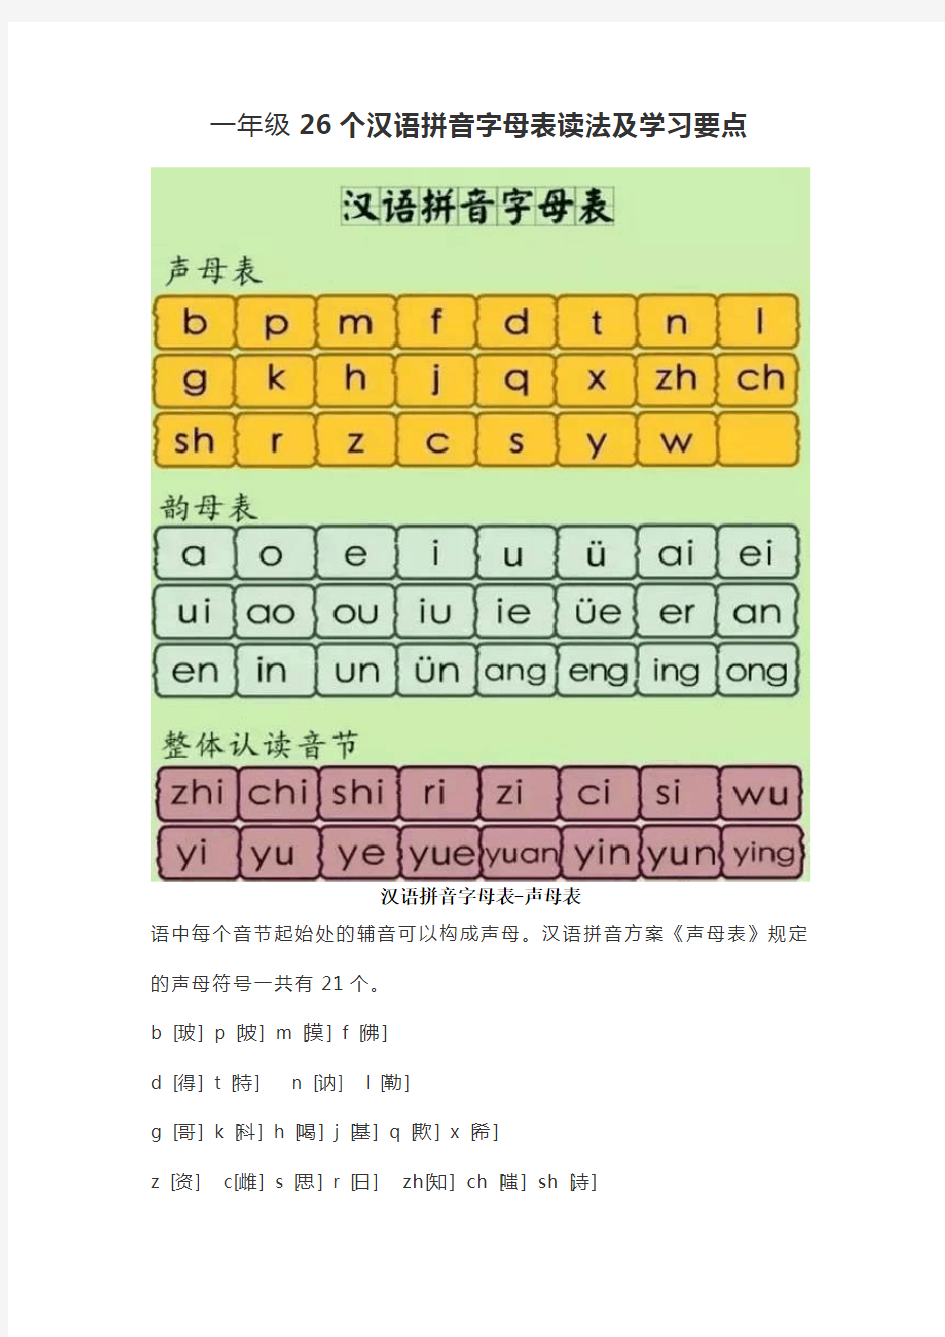 一年级26个汉语拼音字母表读法及学习要点